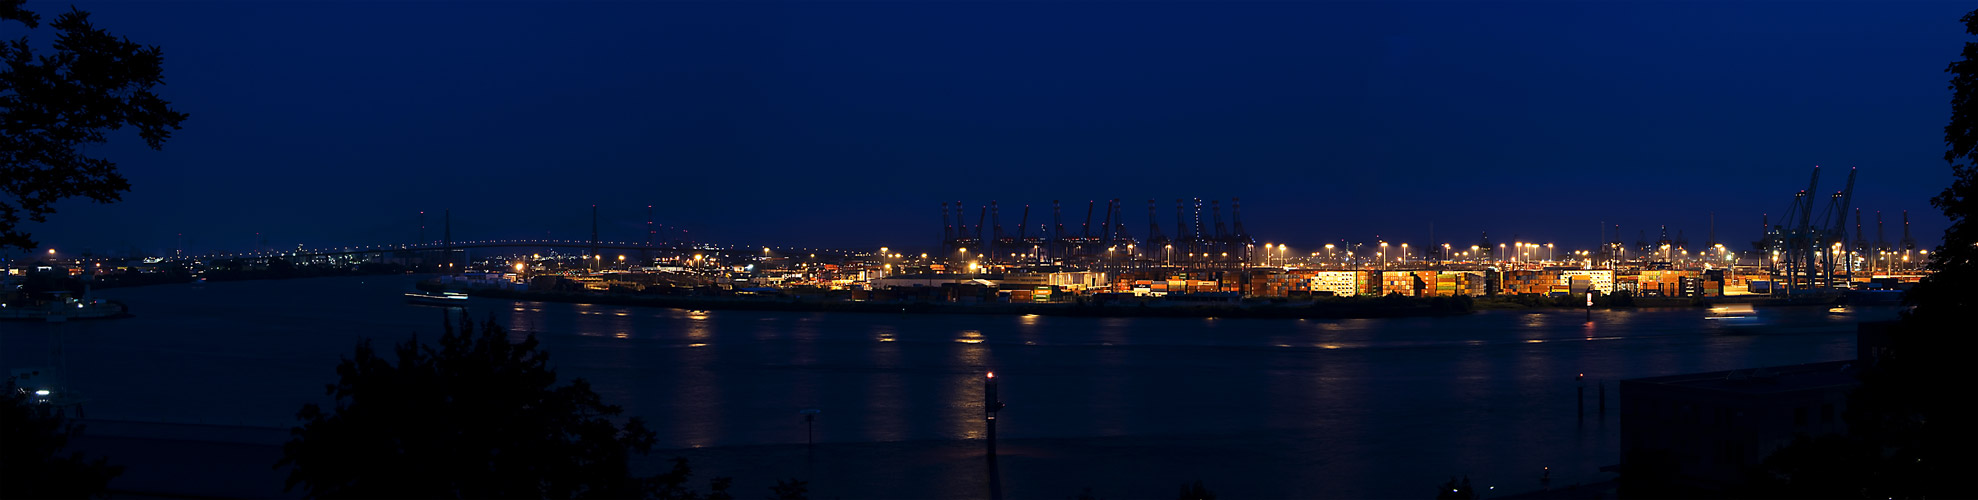 Köhlbrandbrücke und Hamburger Hafen bei Nacht